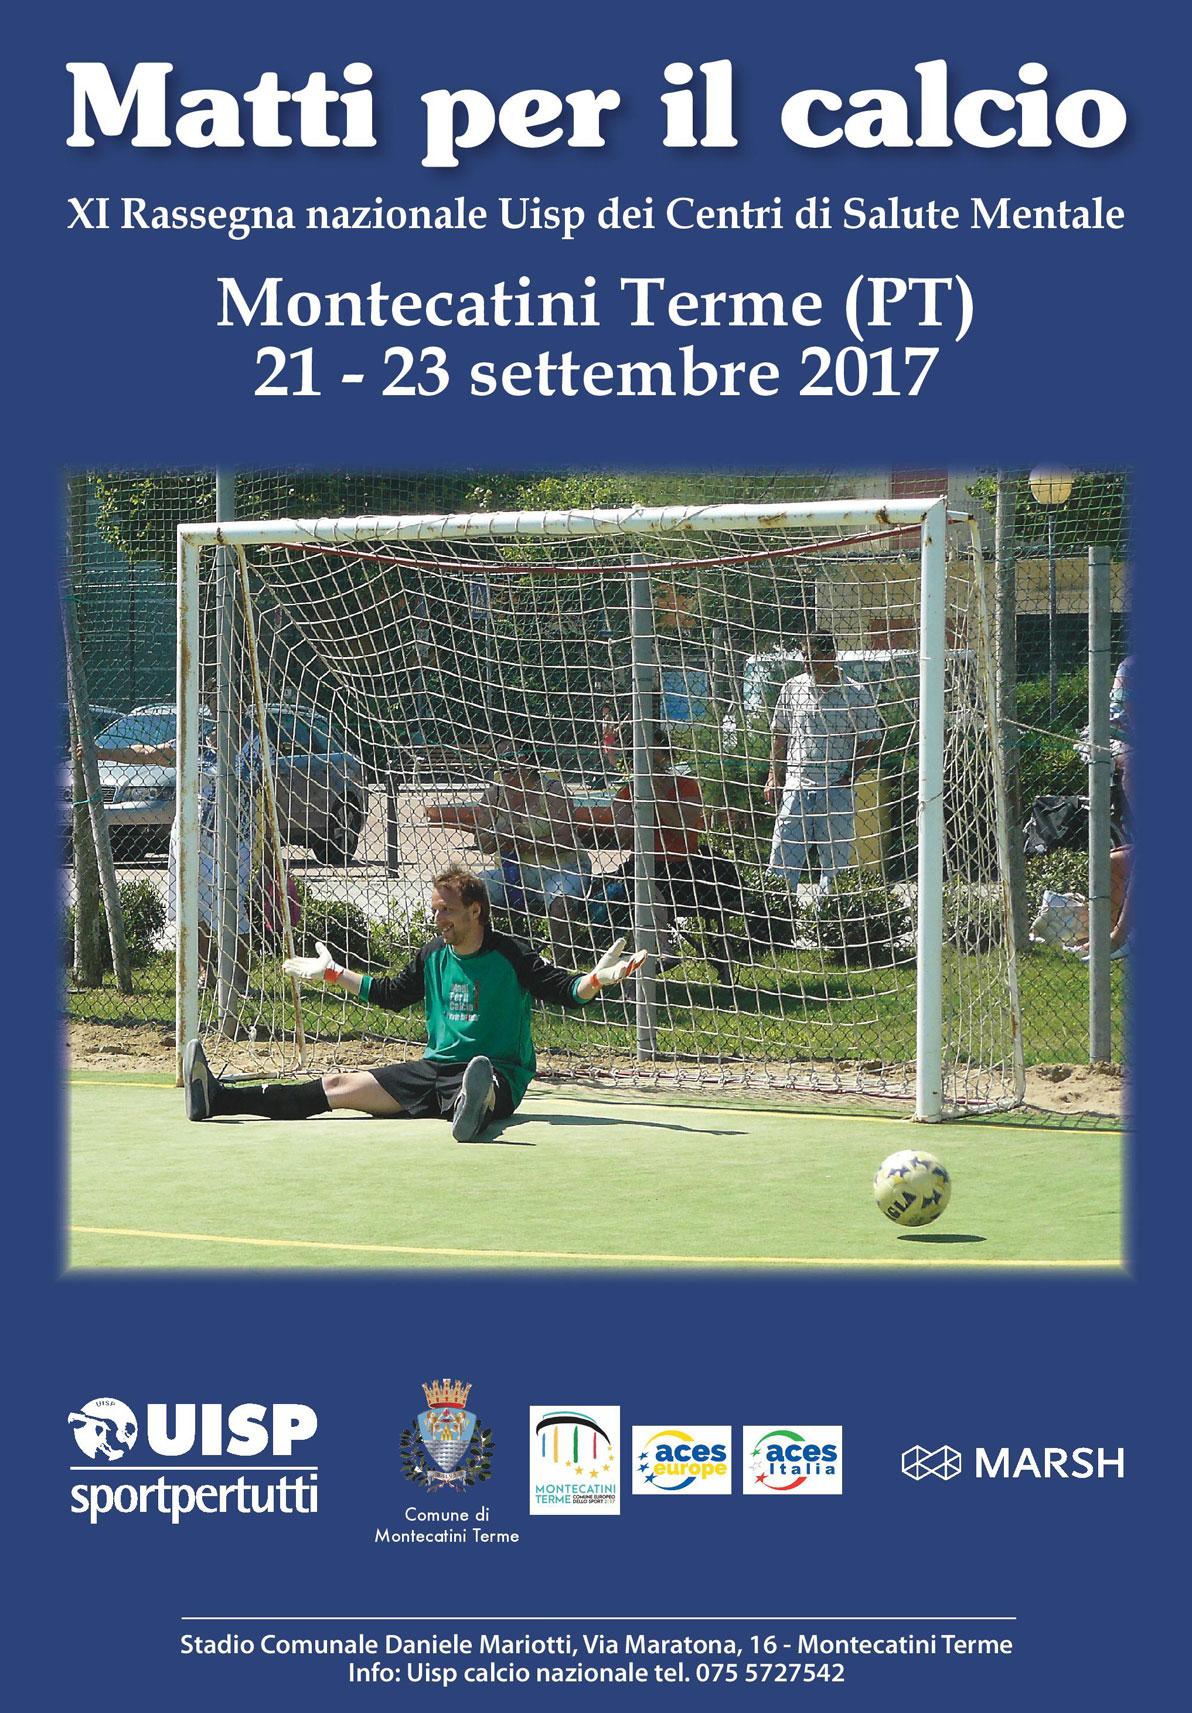 Torna “Matti per il Calcio”, Rassegna nazionale dei Centri di igiene mentale di tutta Italia dal 21 al 23 settembre a Montecatini Terme